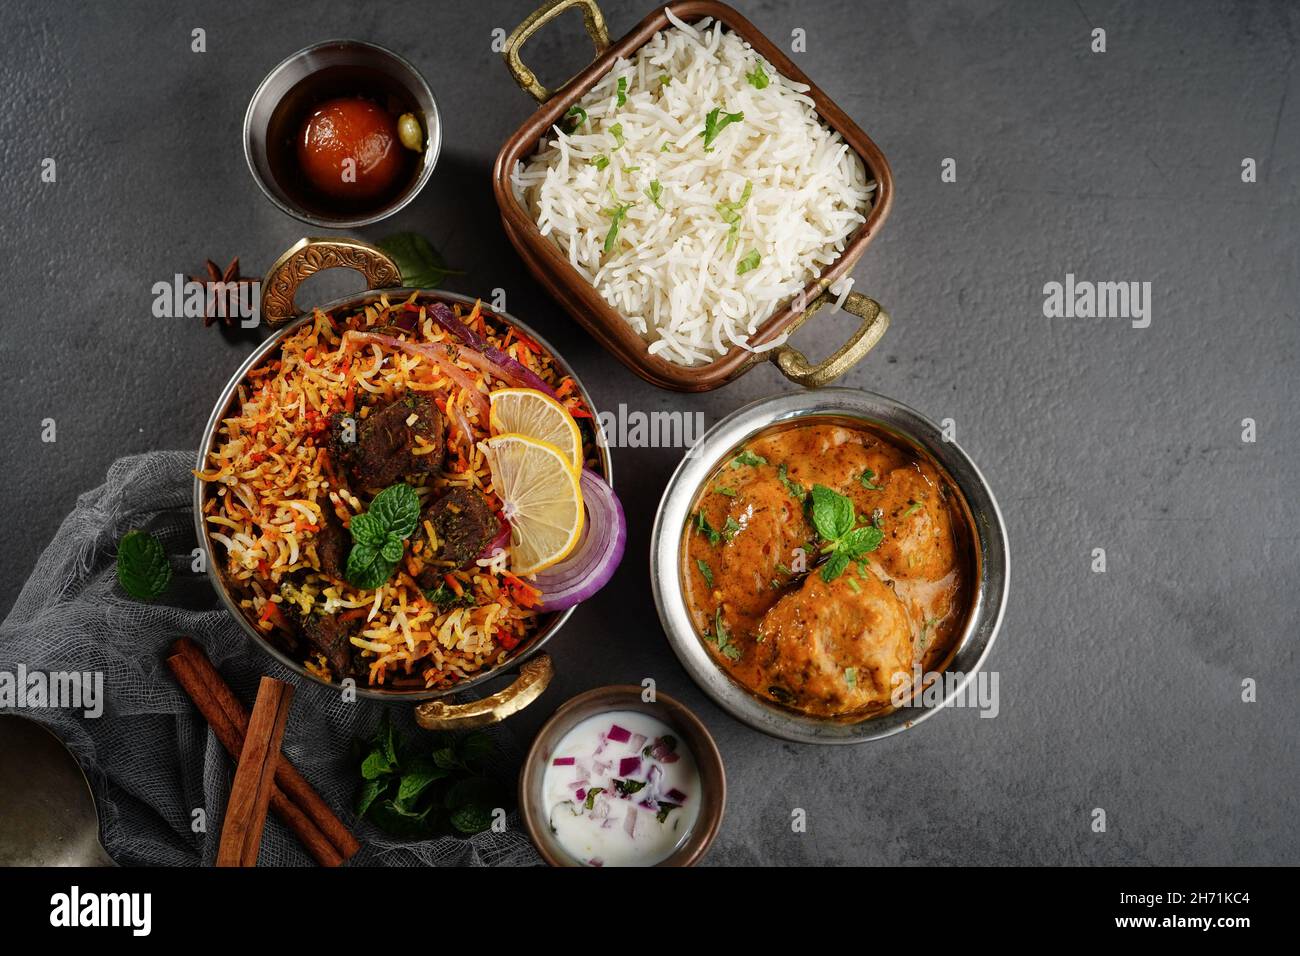 Repas de légumes indiens non-légumes thali - Mutton biryani, raita, kafta de malai, riz basmati et jamun de goulab,mise au point sélective Banque D'Images